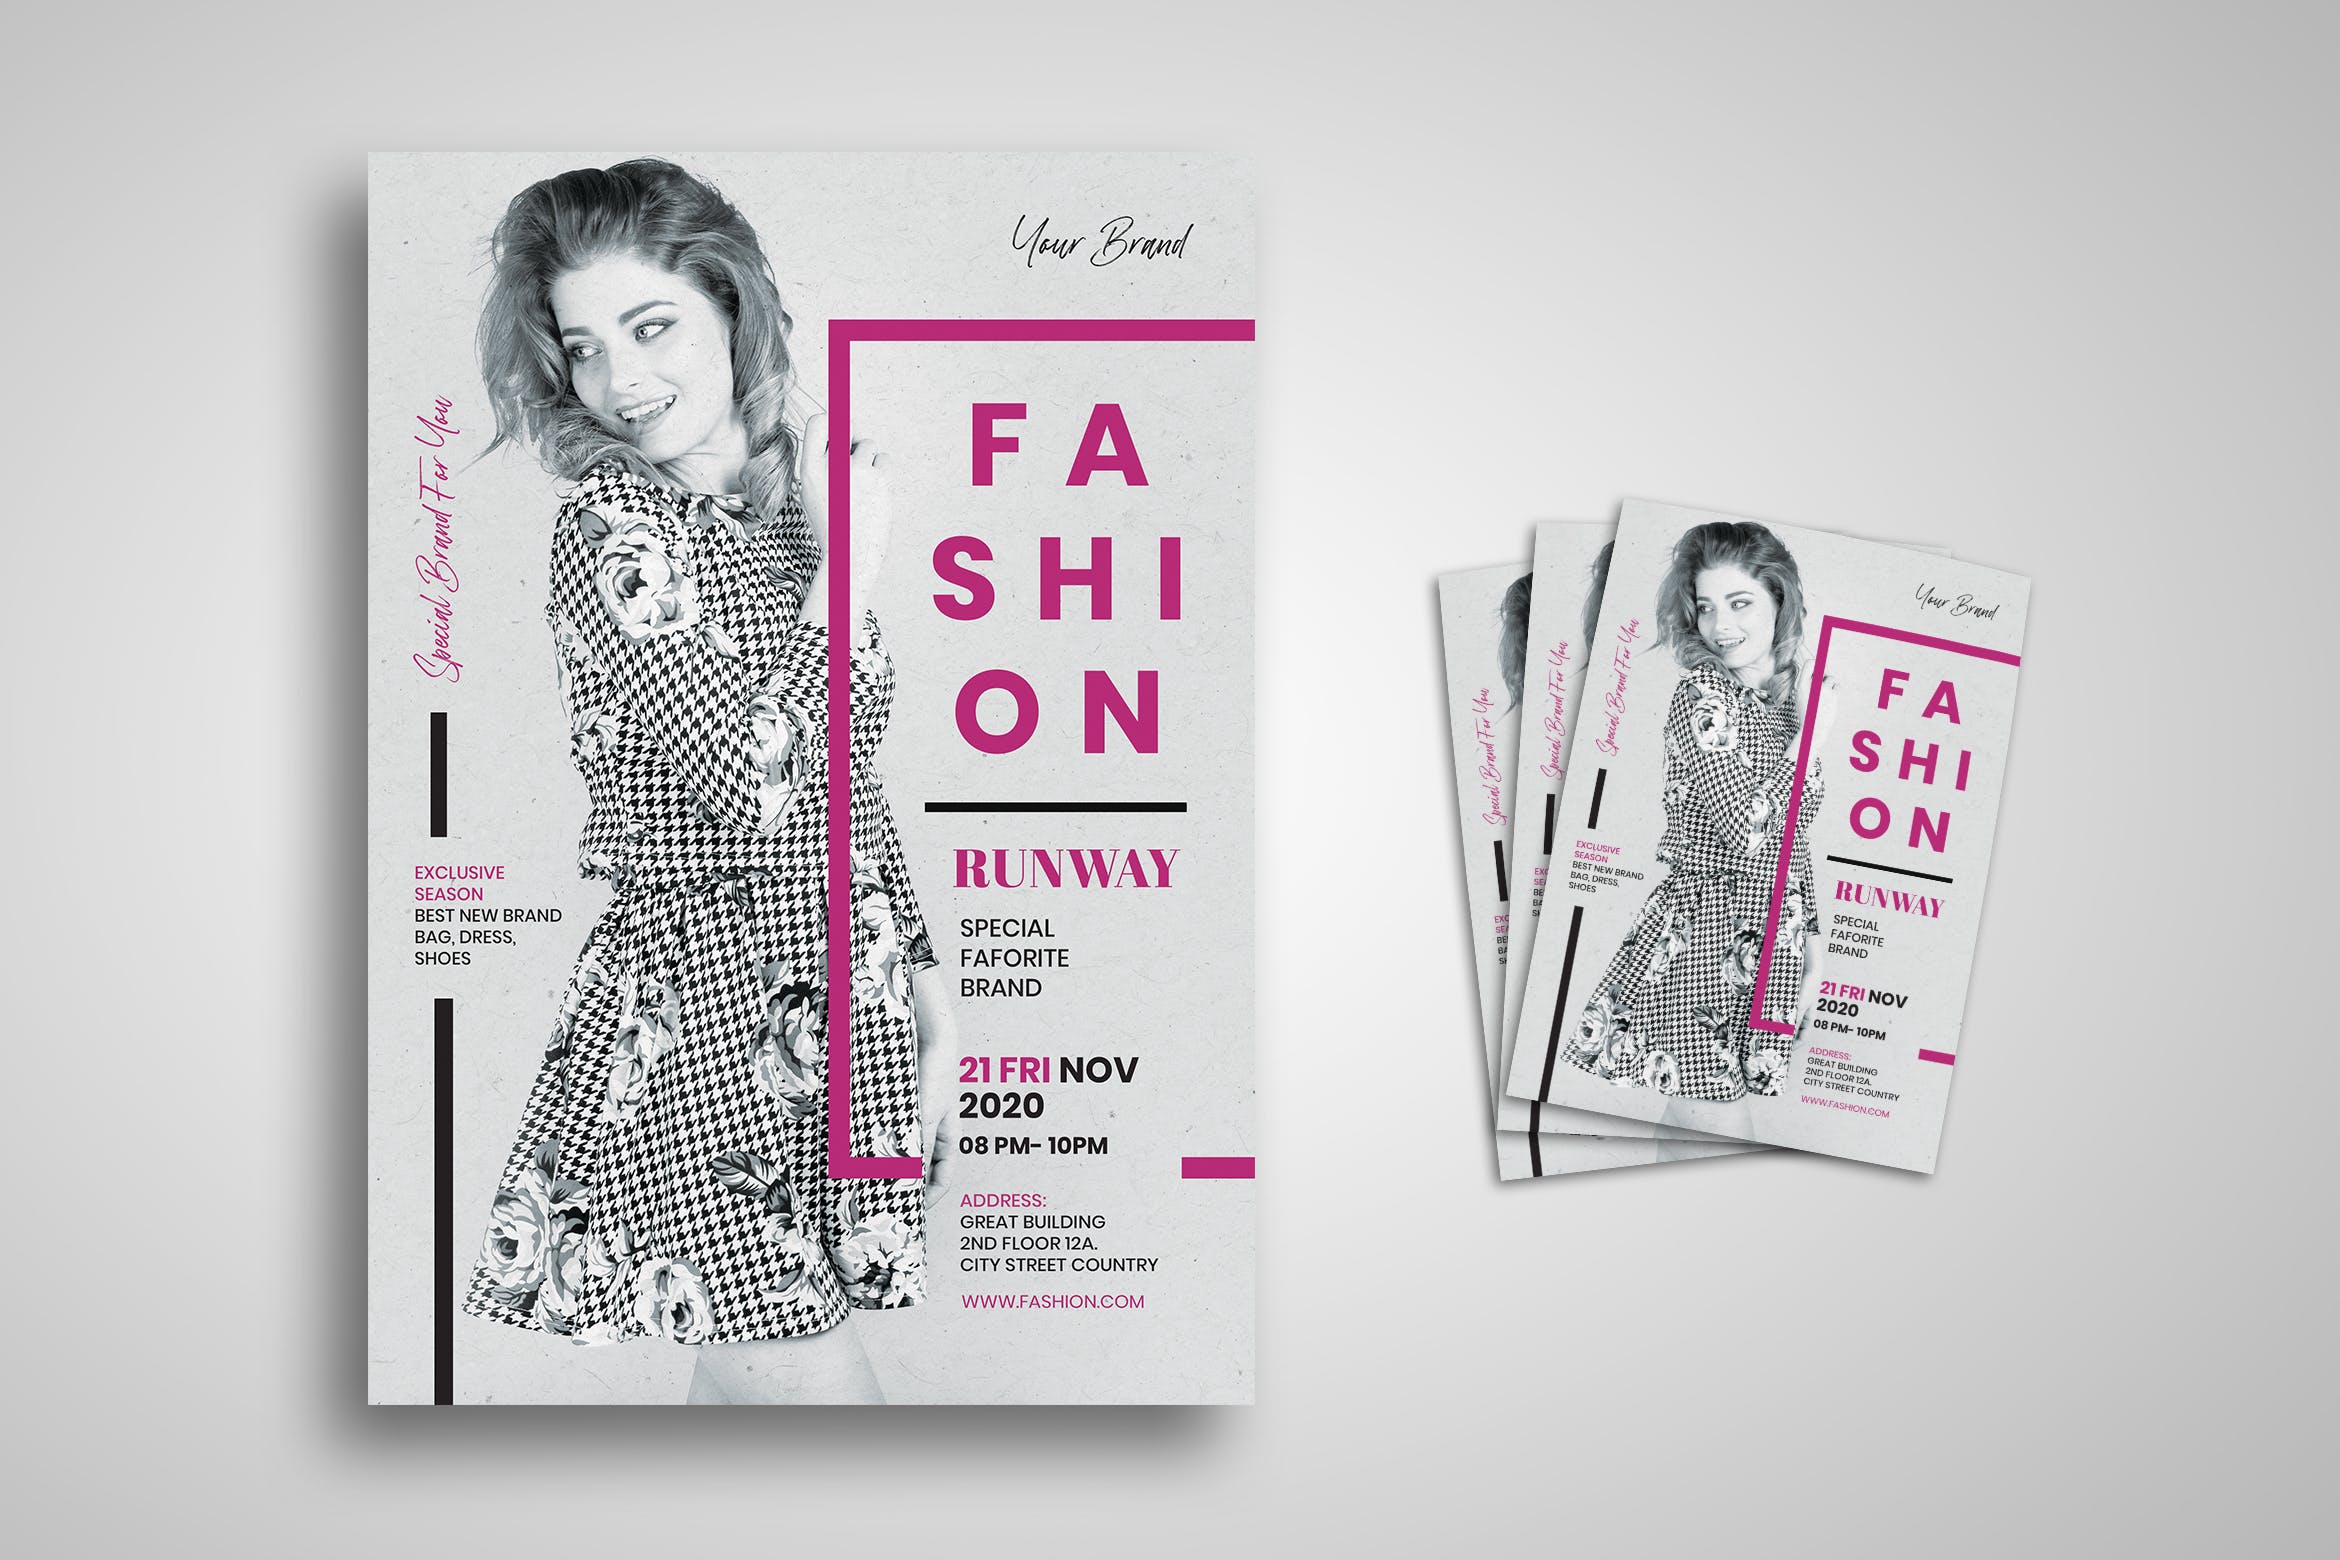 时尚女装特别促销活动海报传单第一素材精选PSD模板 Fashion Flyer插图